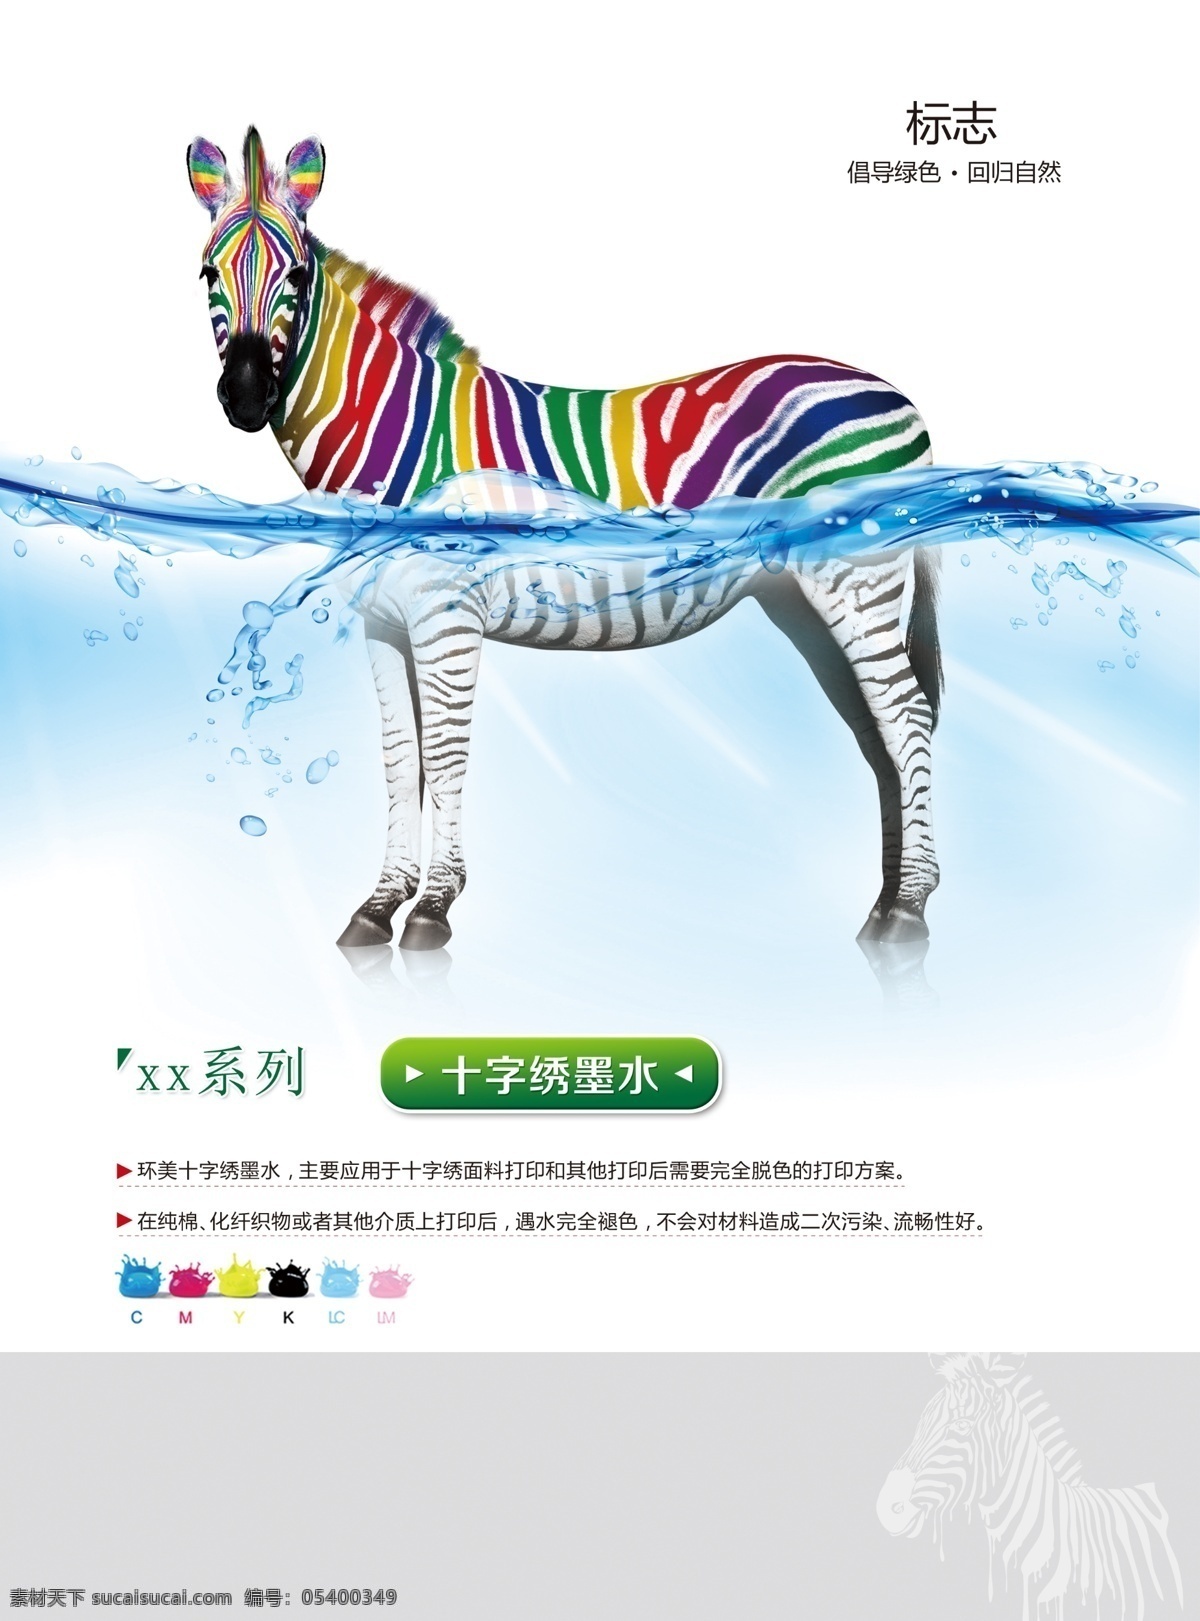 彩色斑马 斑马 水面 十字绣墨水 动物 创意海报 常用素材 展板模板